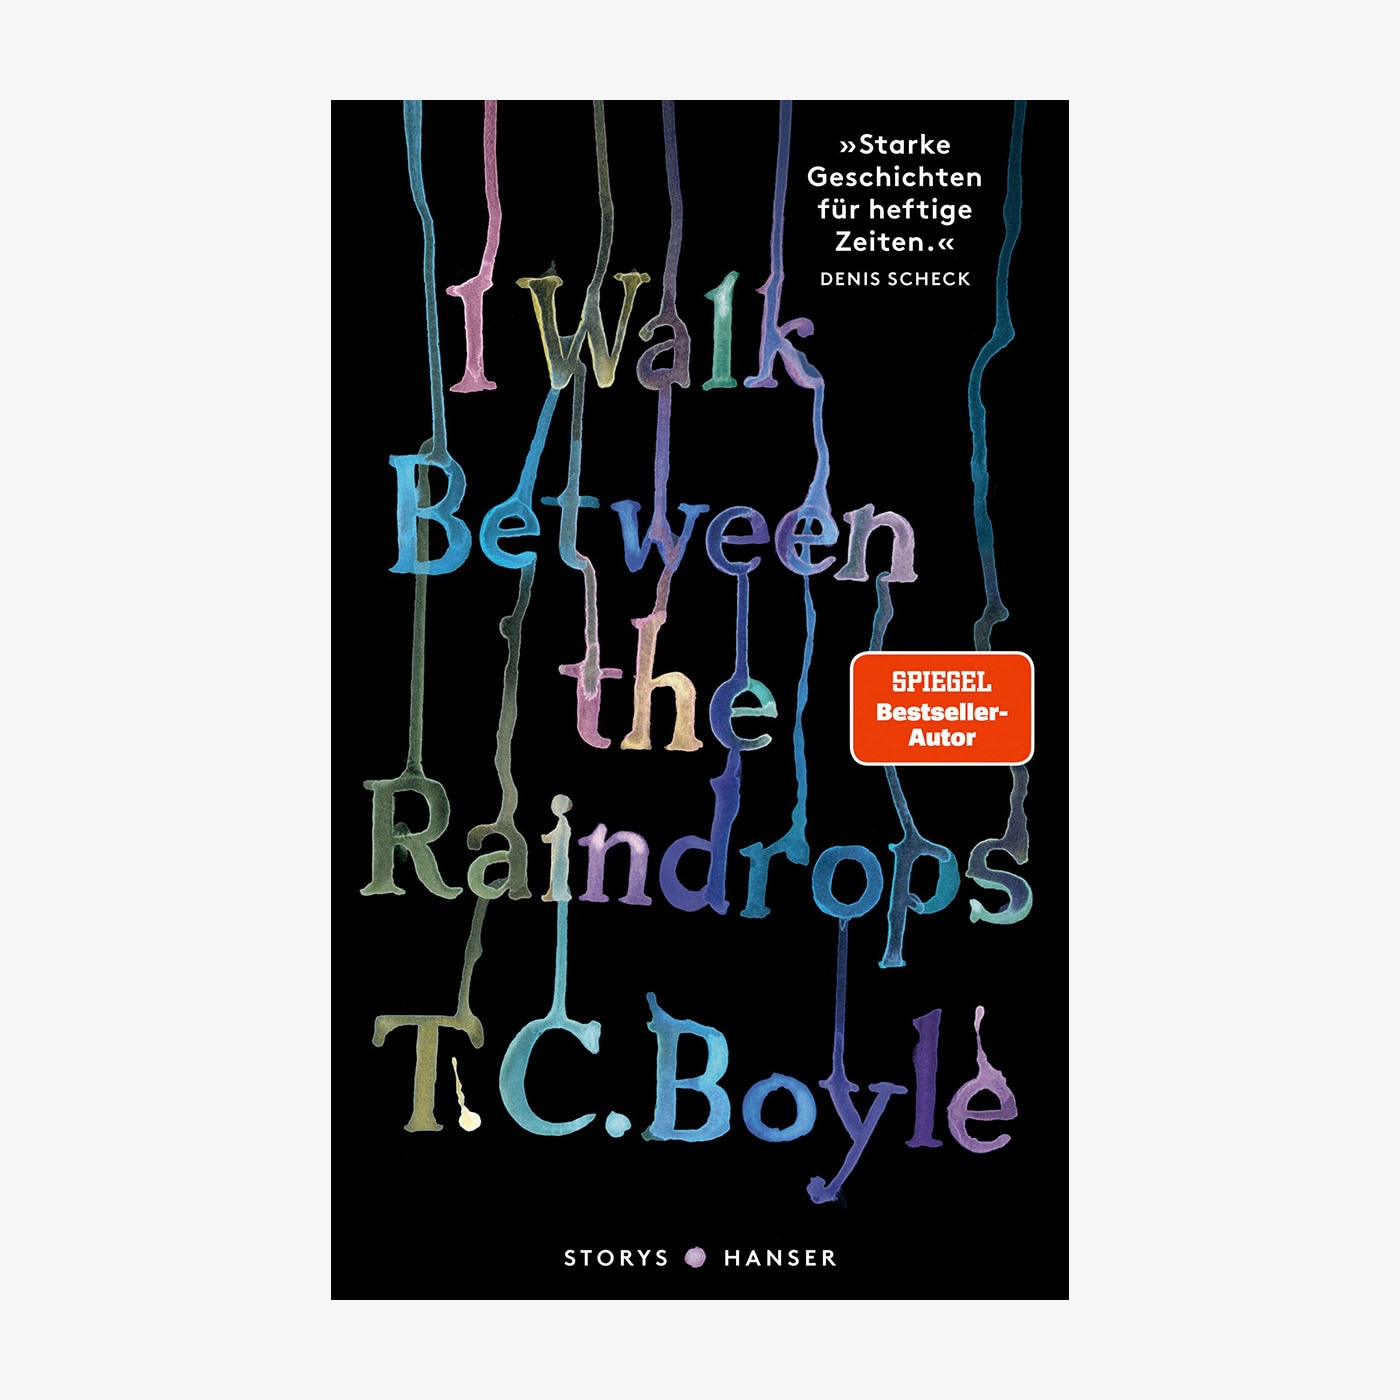 Neue Bücher: "I Walk Between the Raindrops" von T.C. Boyle